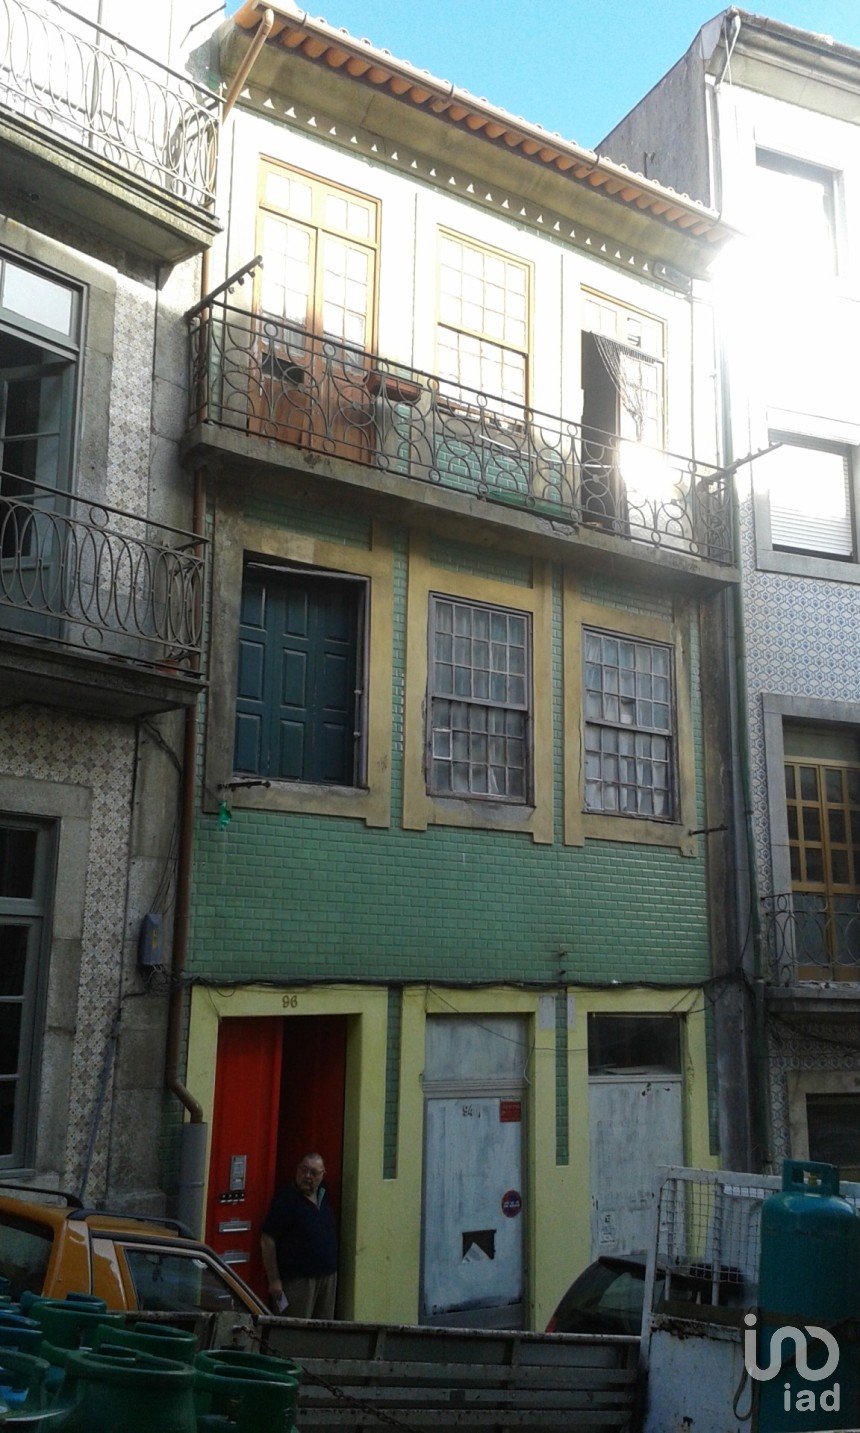 Block of flats in Cedofeita, Santo Ildefonso, Sé, Miragaia, São Nicolau e Vitória of 300 m²